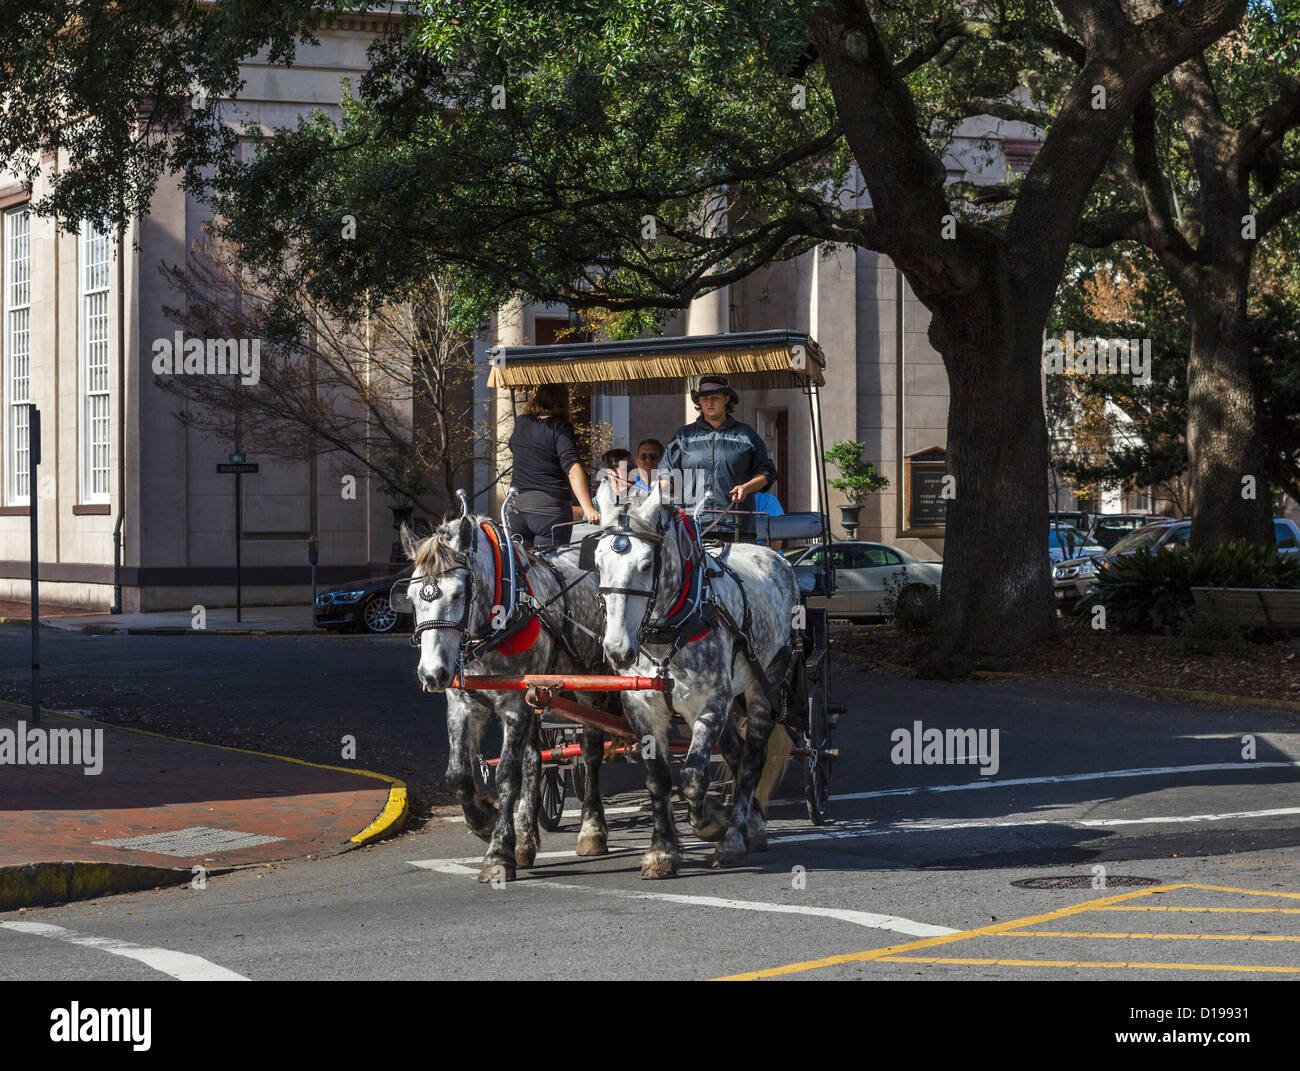 Paseo en carruaje tirado por caballos en el centro histórico de Savannah, Georgia, EE.UU. Foto de stock